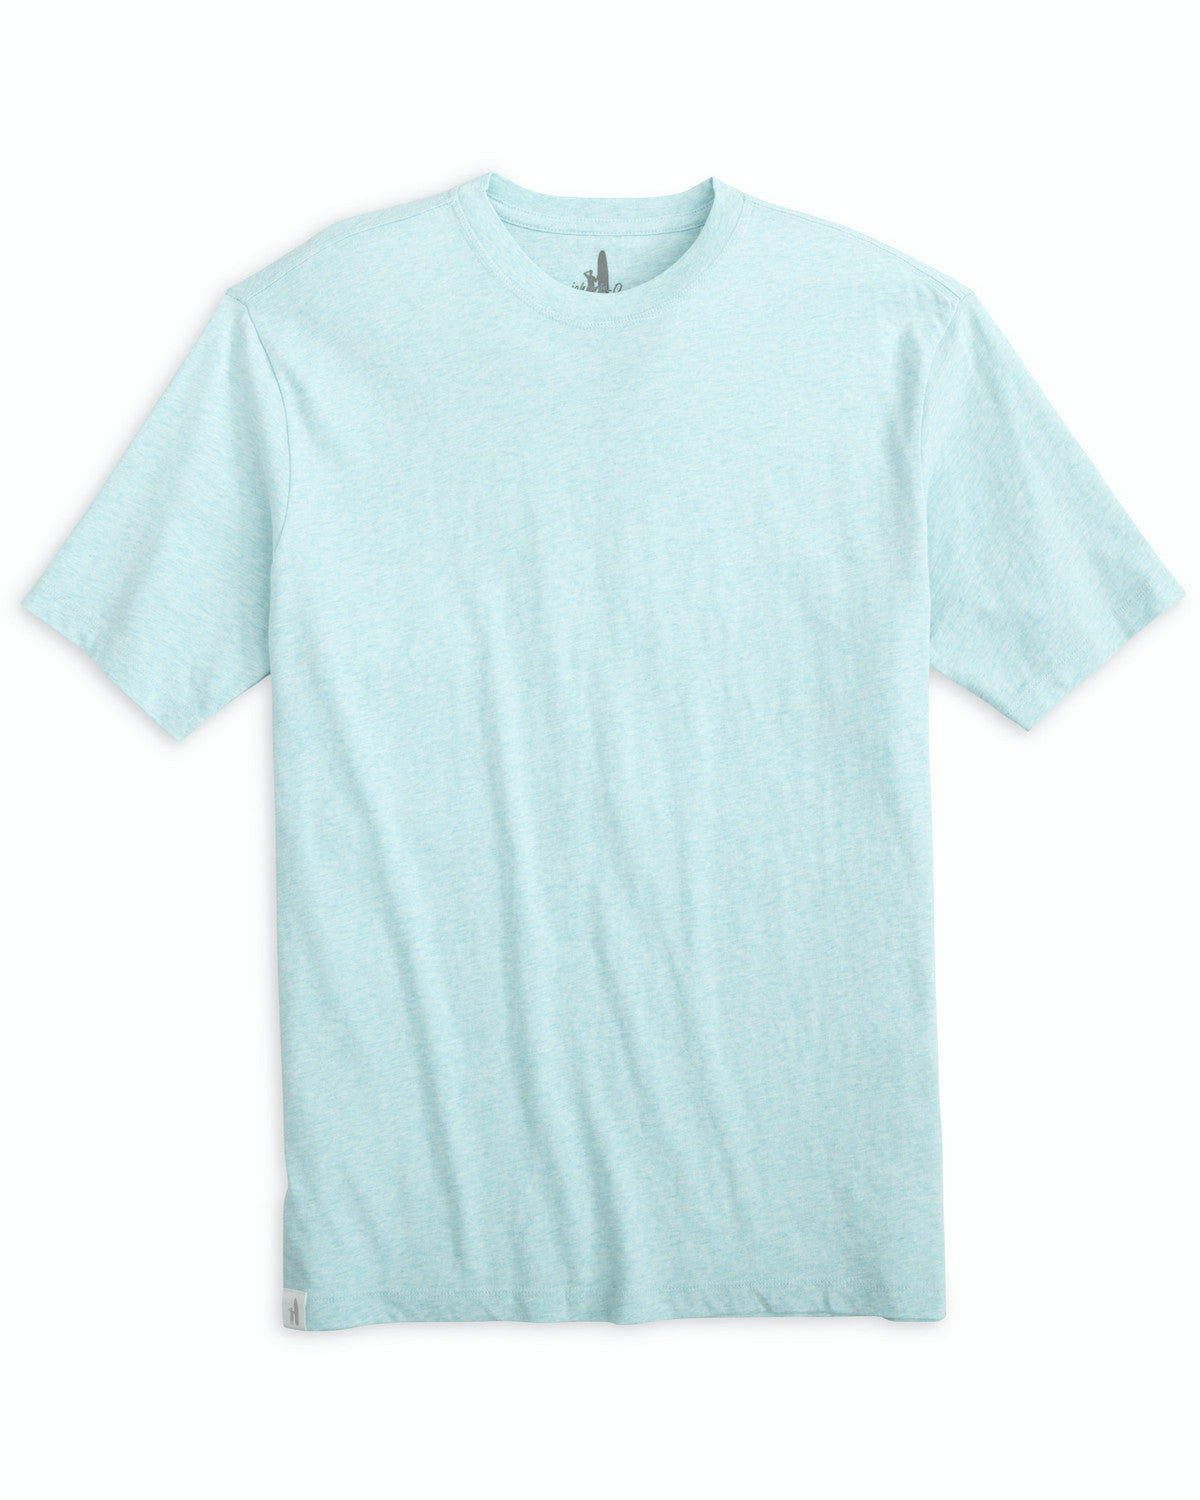 Johnnie-O Men's Heathered Spencer T-Shirt Apparel Johnnie-O Whaler Small 